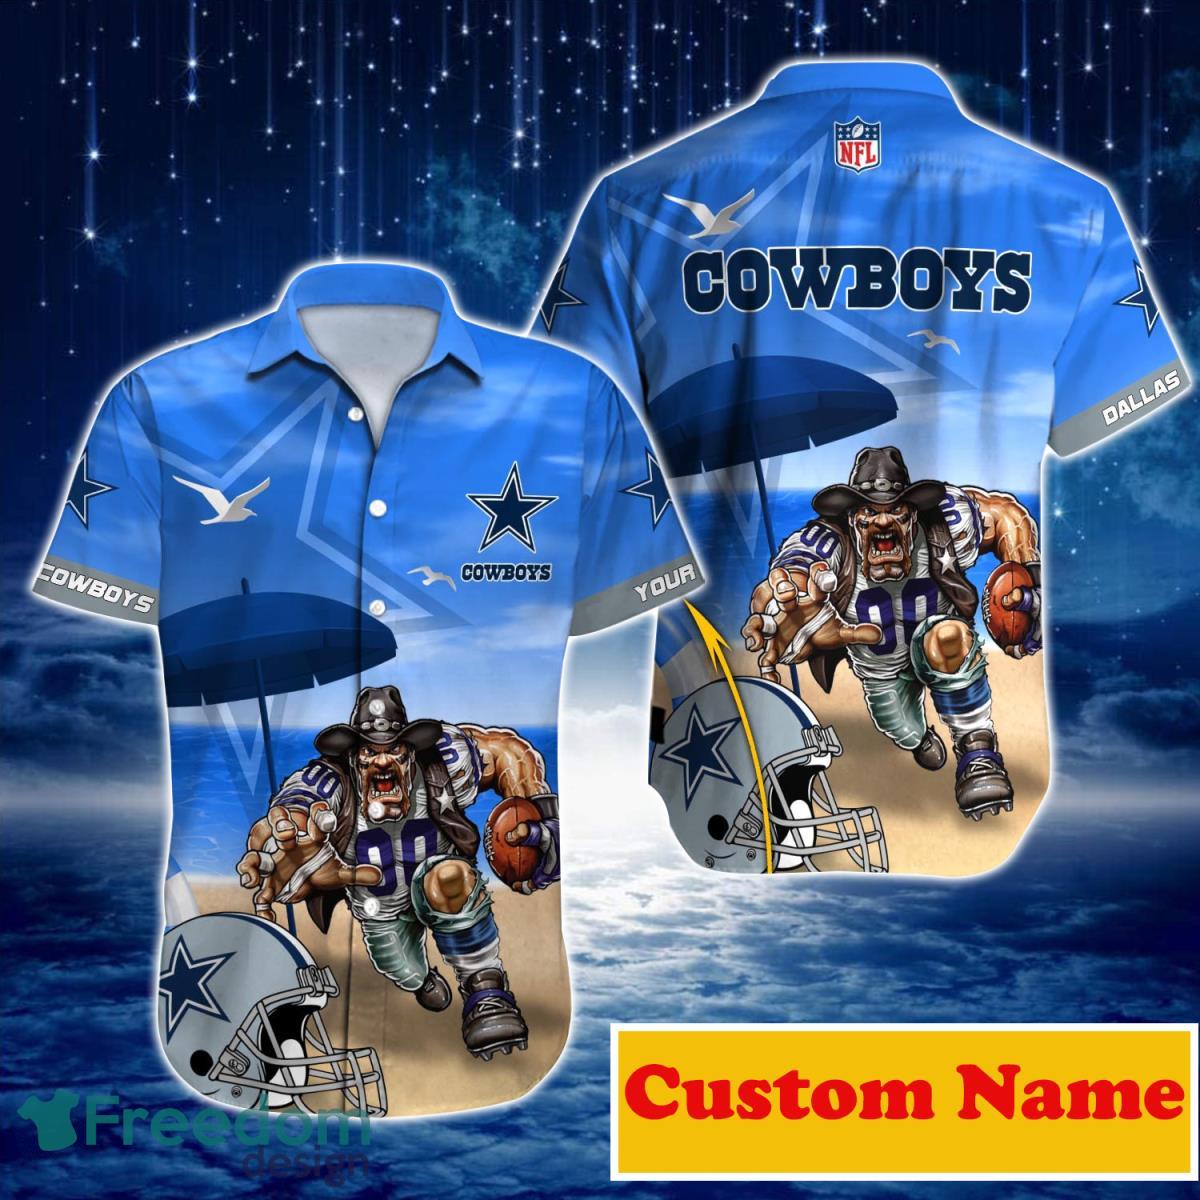 dallas cowboys jerseys for men